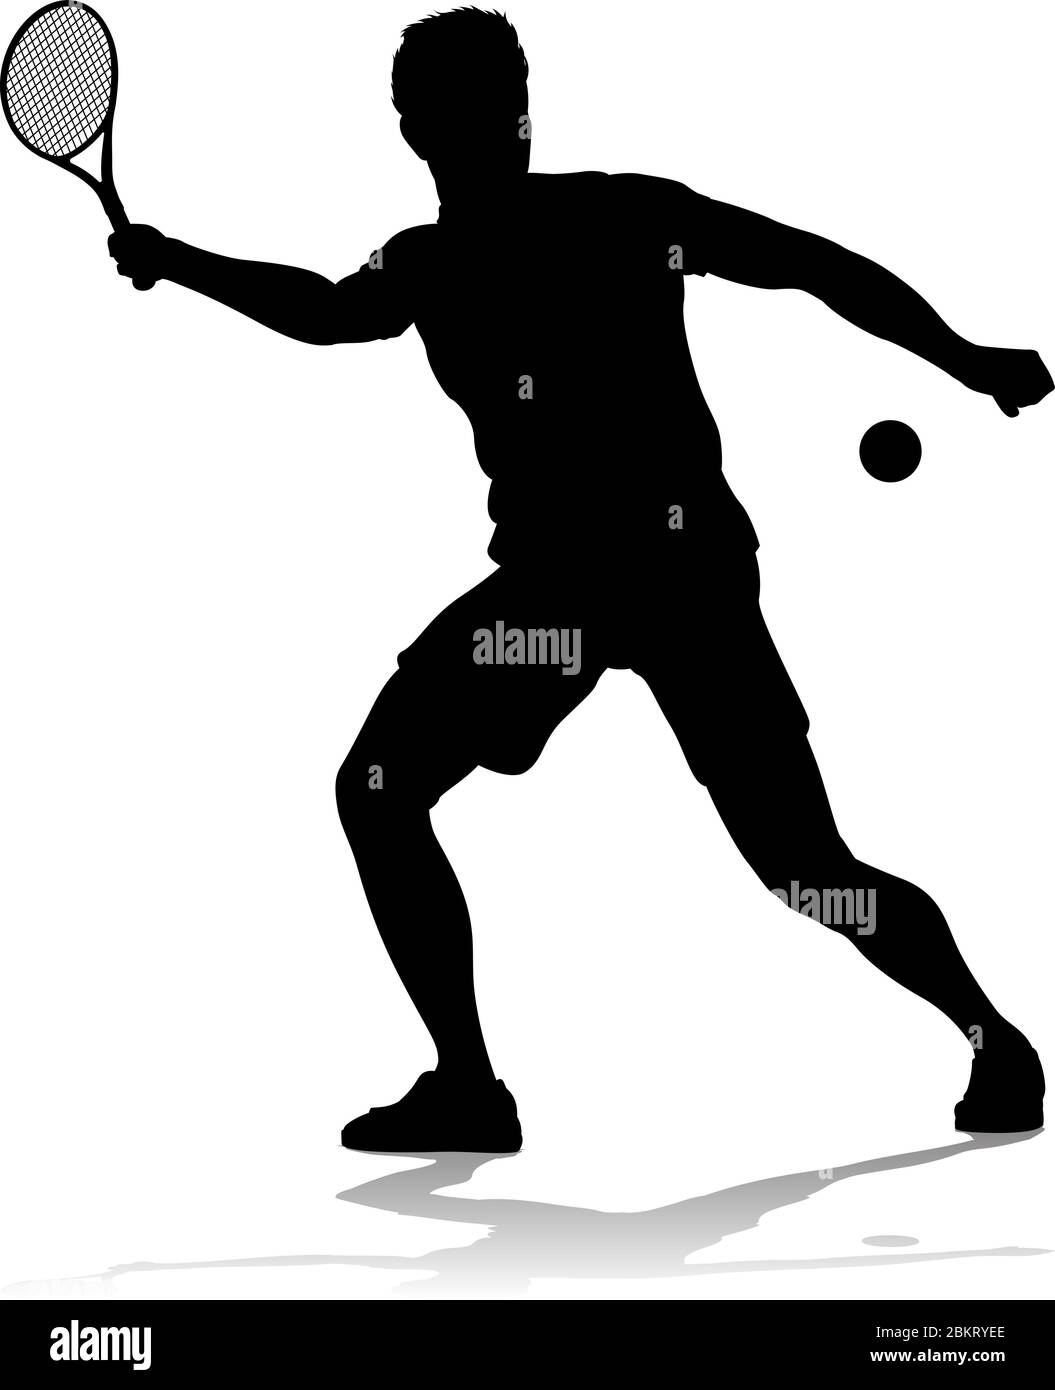 Tennis Silhouette Sport joueur Homme Image Vectorielle Stock - Alamy